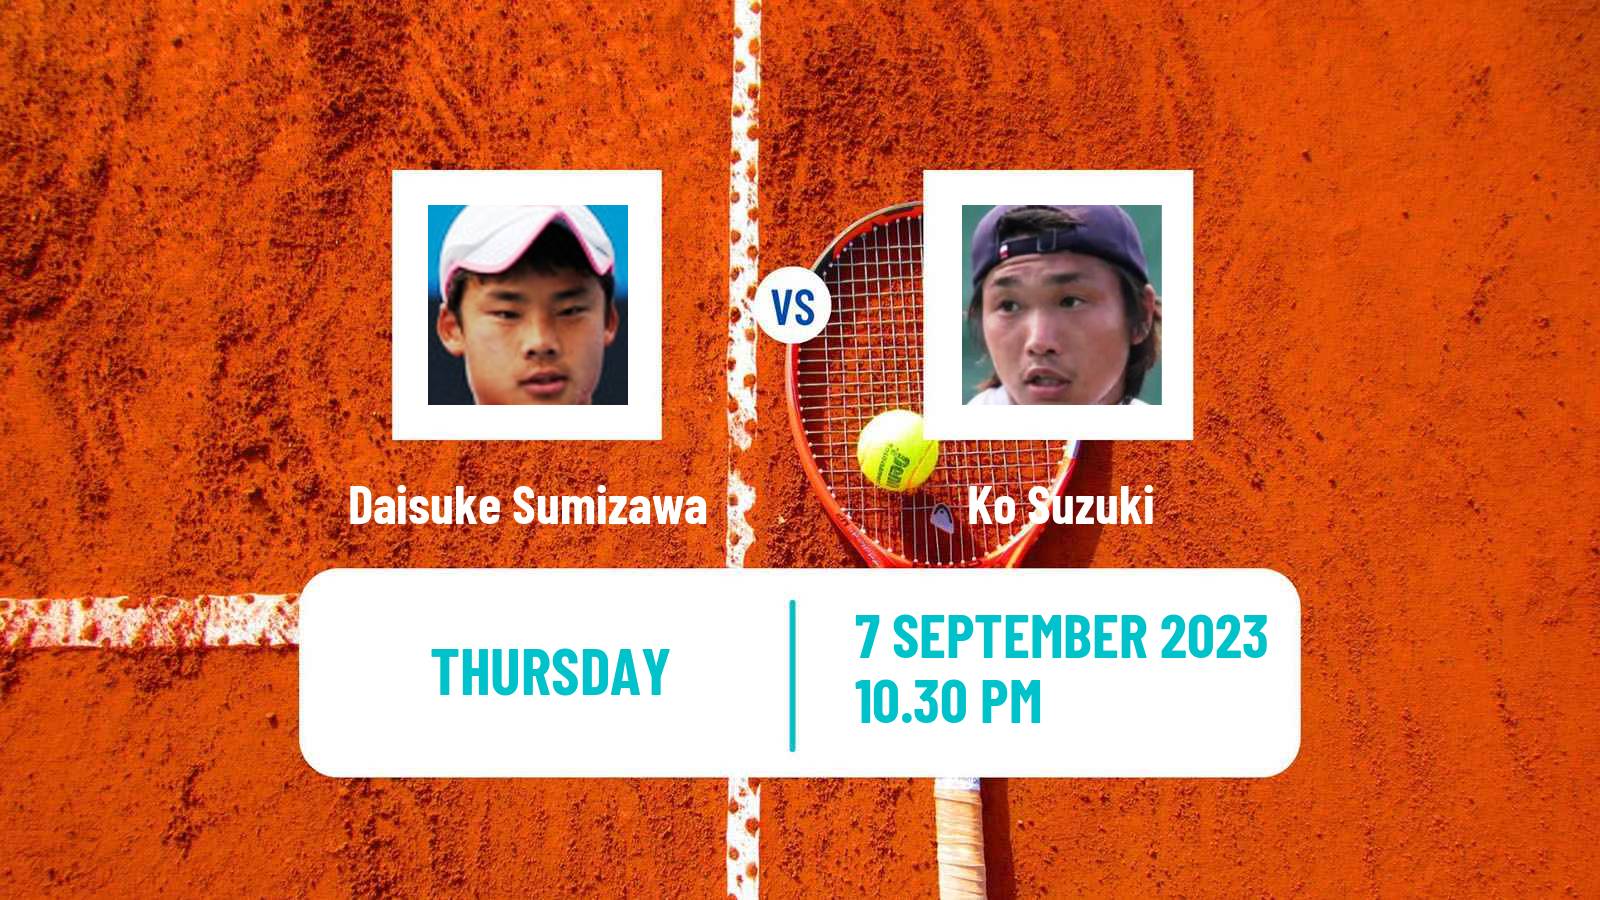 Tennis ITF M25 Sapporo Men Daisuke Sumizawa - Ko Suzuki